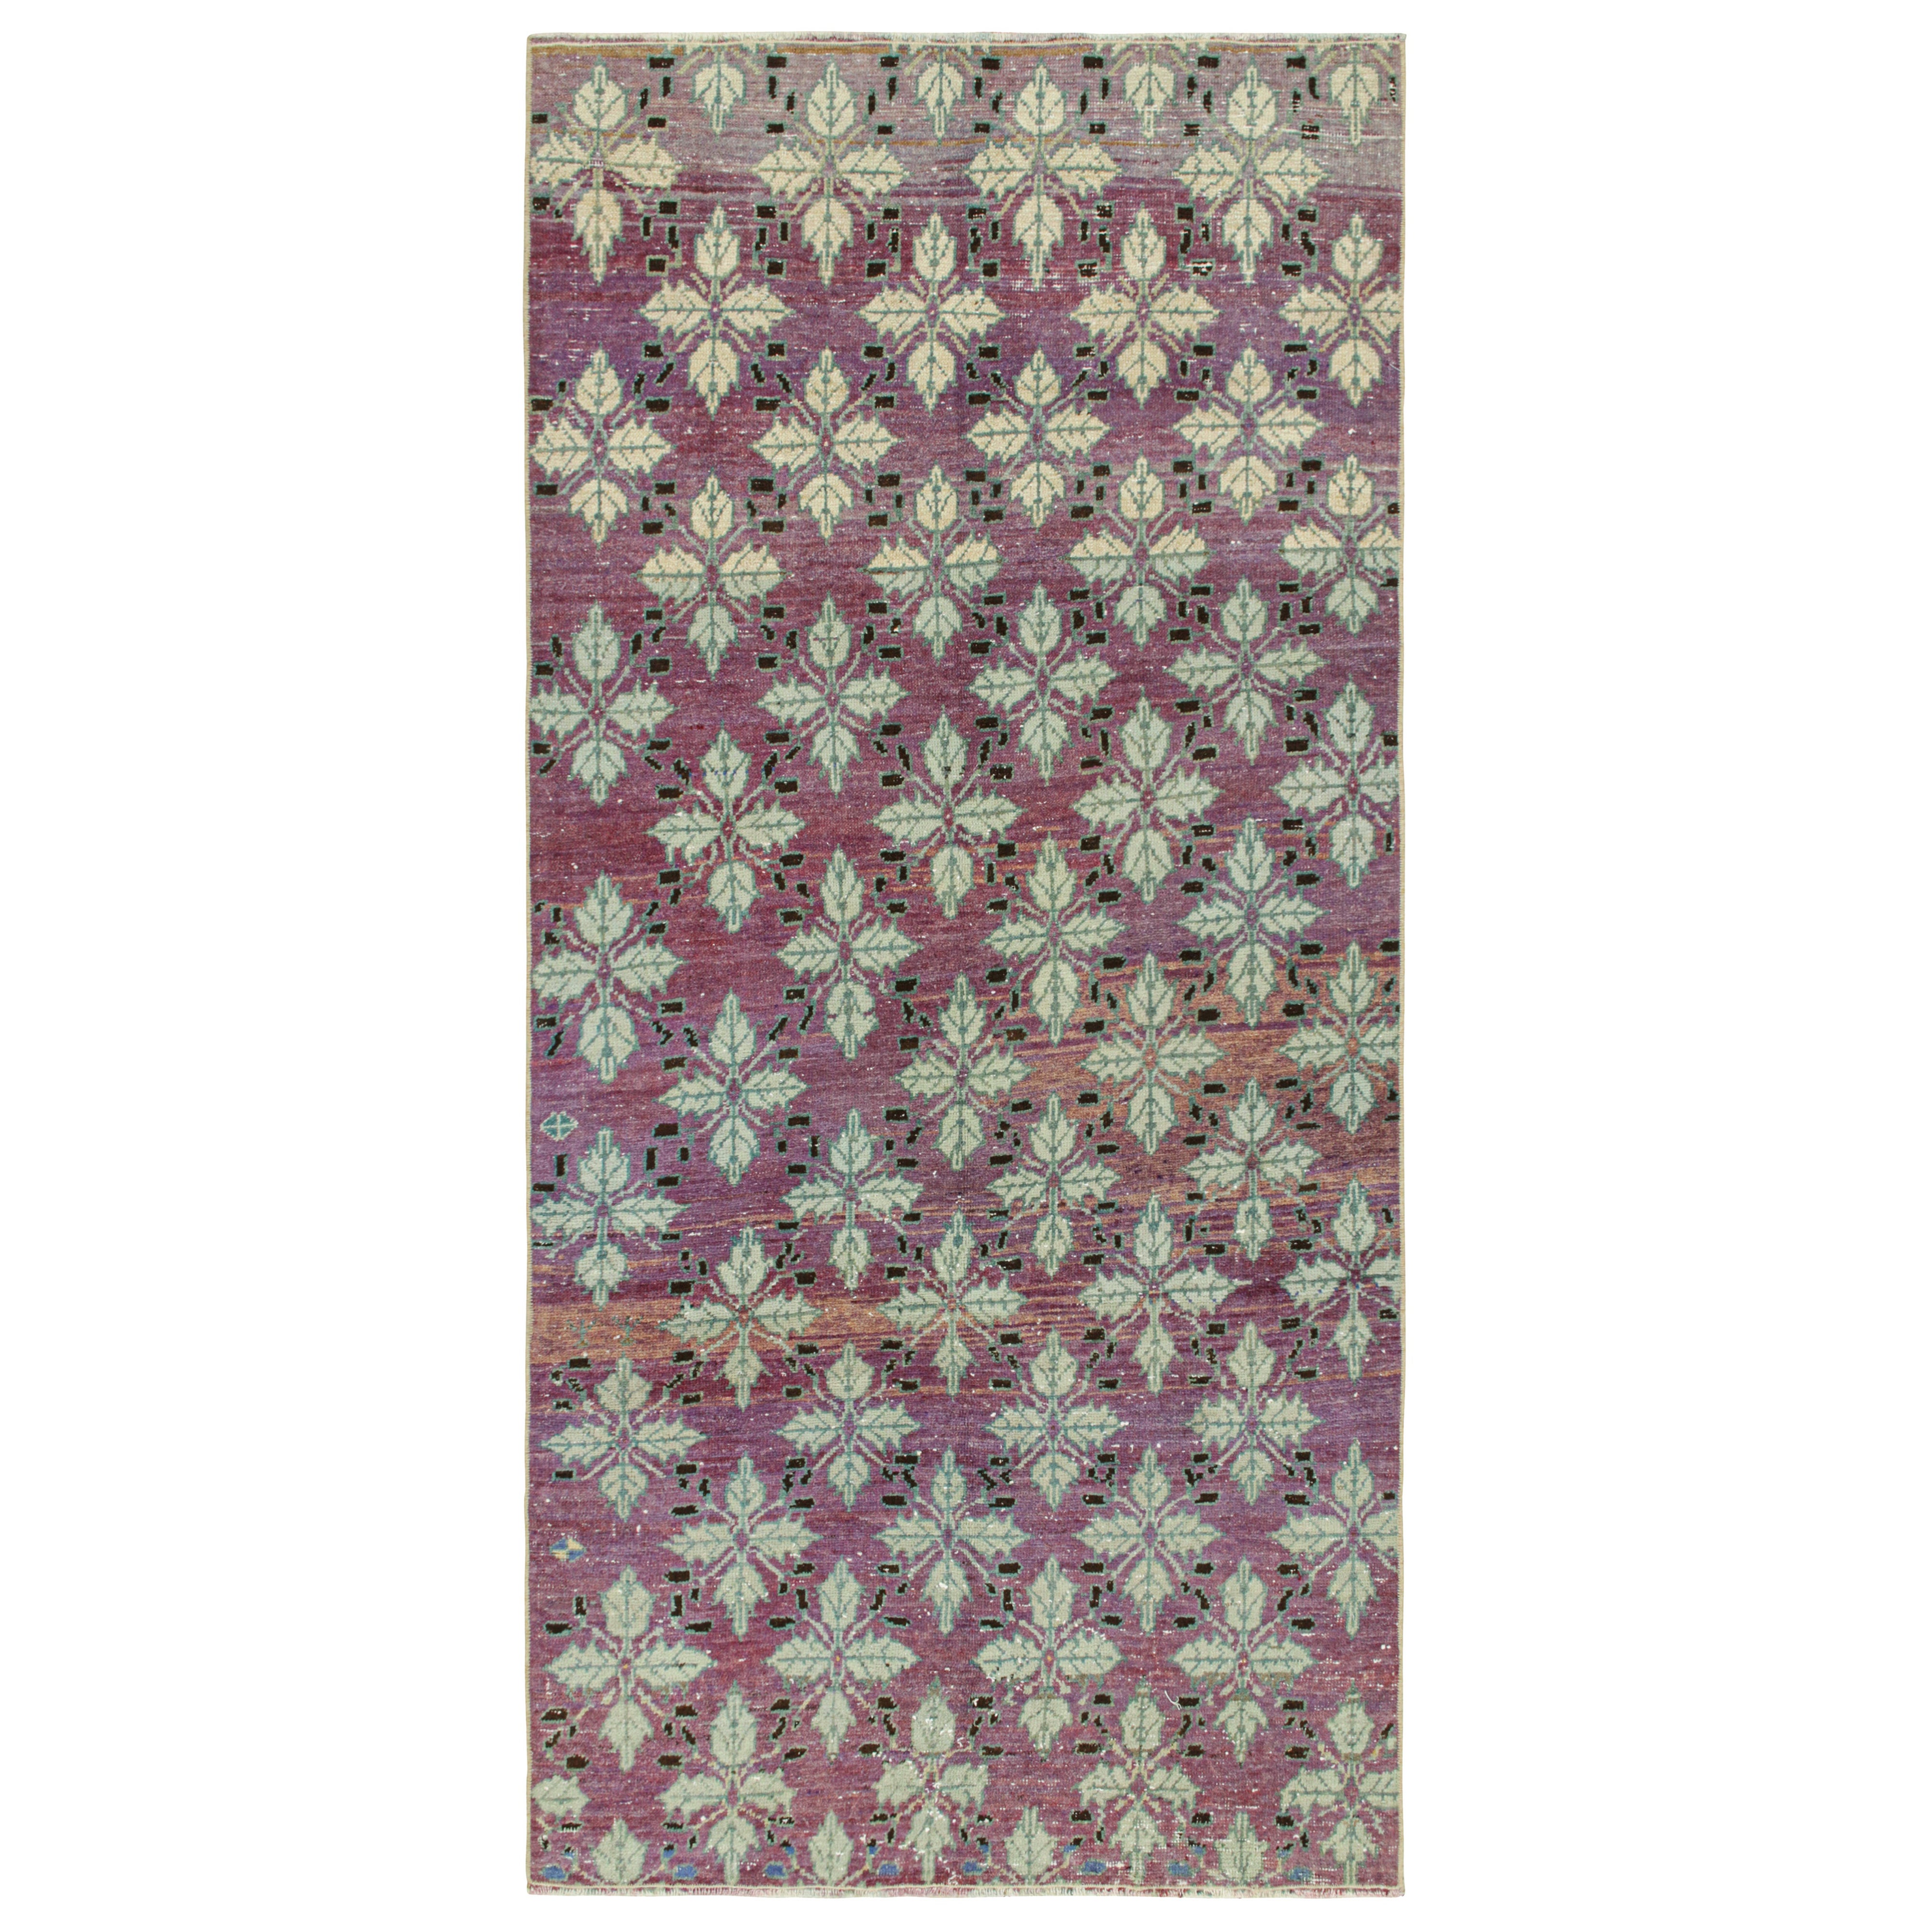 Vintage Zeki Müren Teppich in Lila mit floralen Mustern, von Rug & Kilim